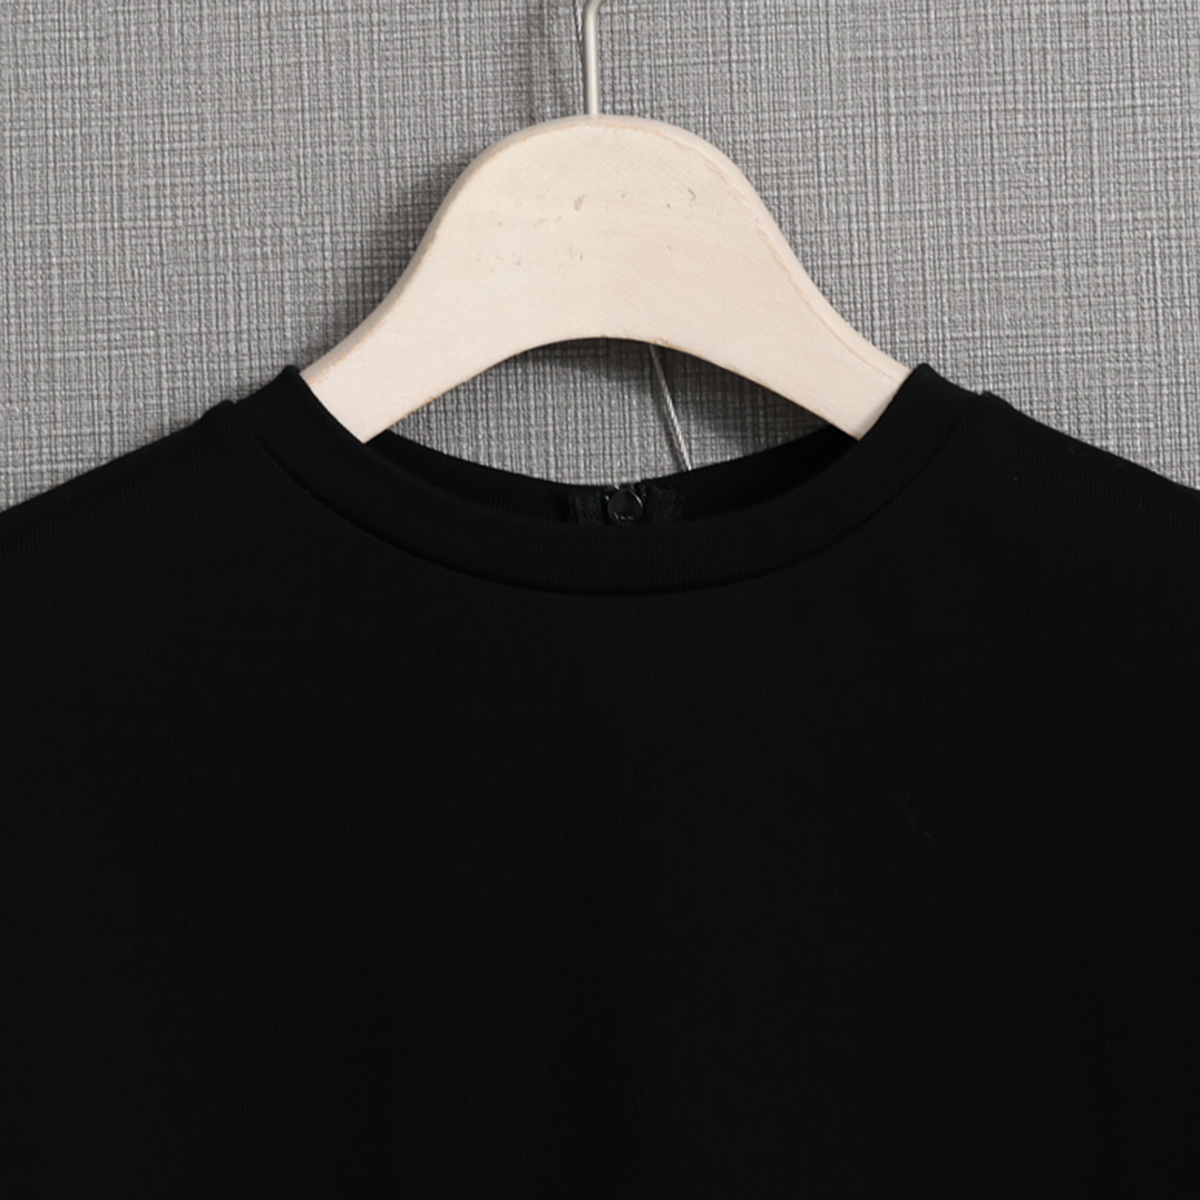 『Suvin cotton』 big size tops BLACK画像